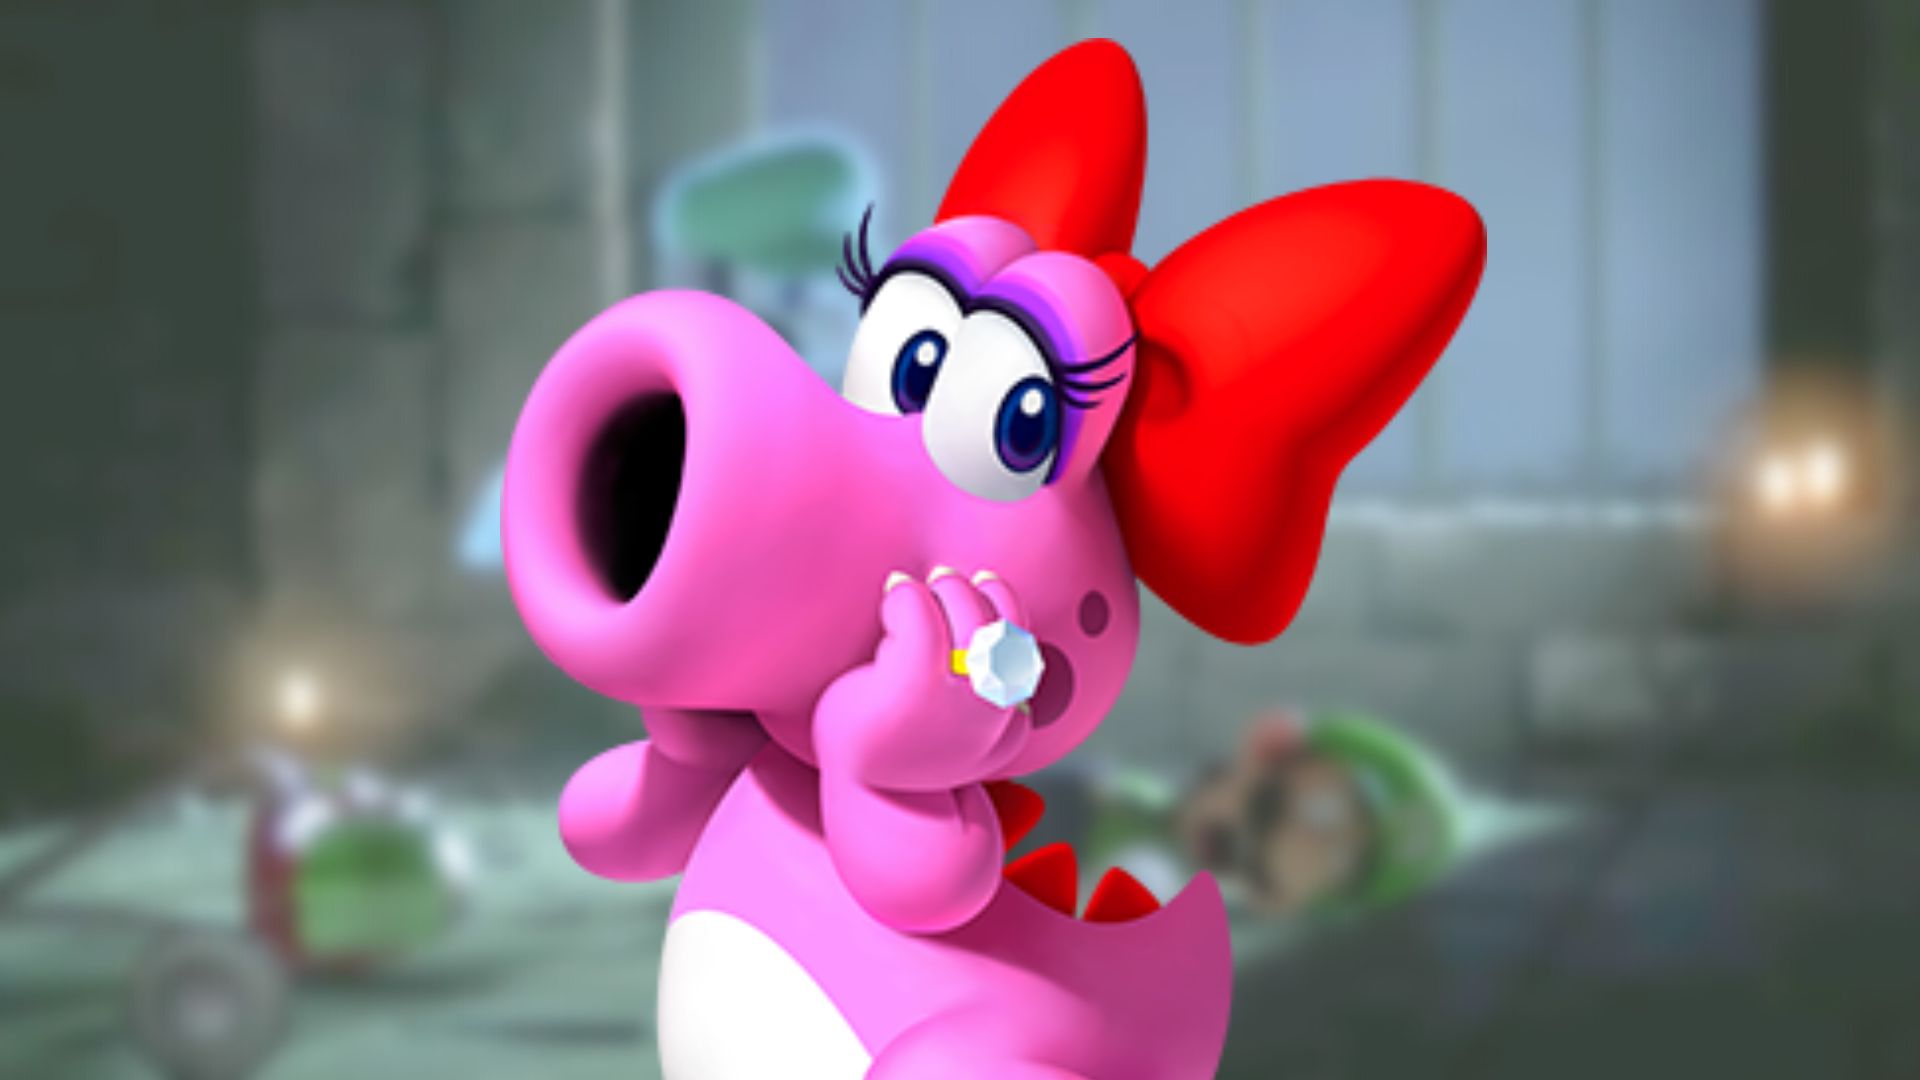 Top Ten Mario Characters, Here are my ten favorite characte…